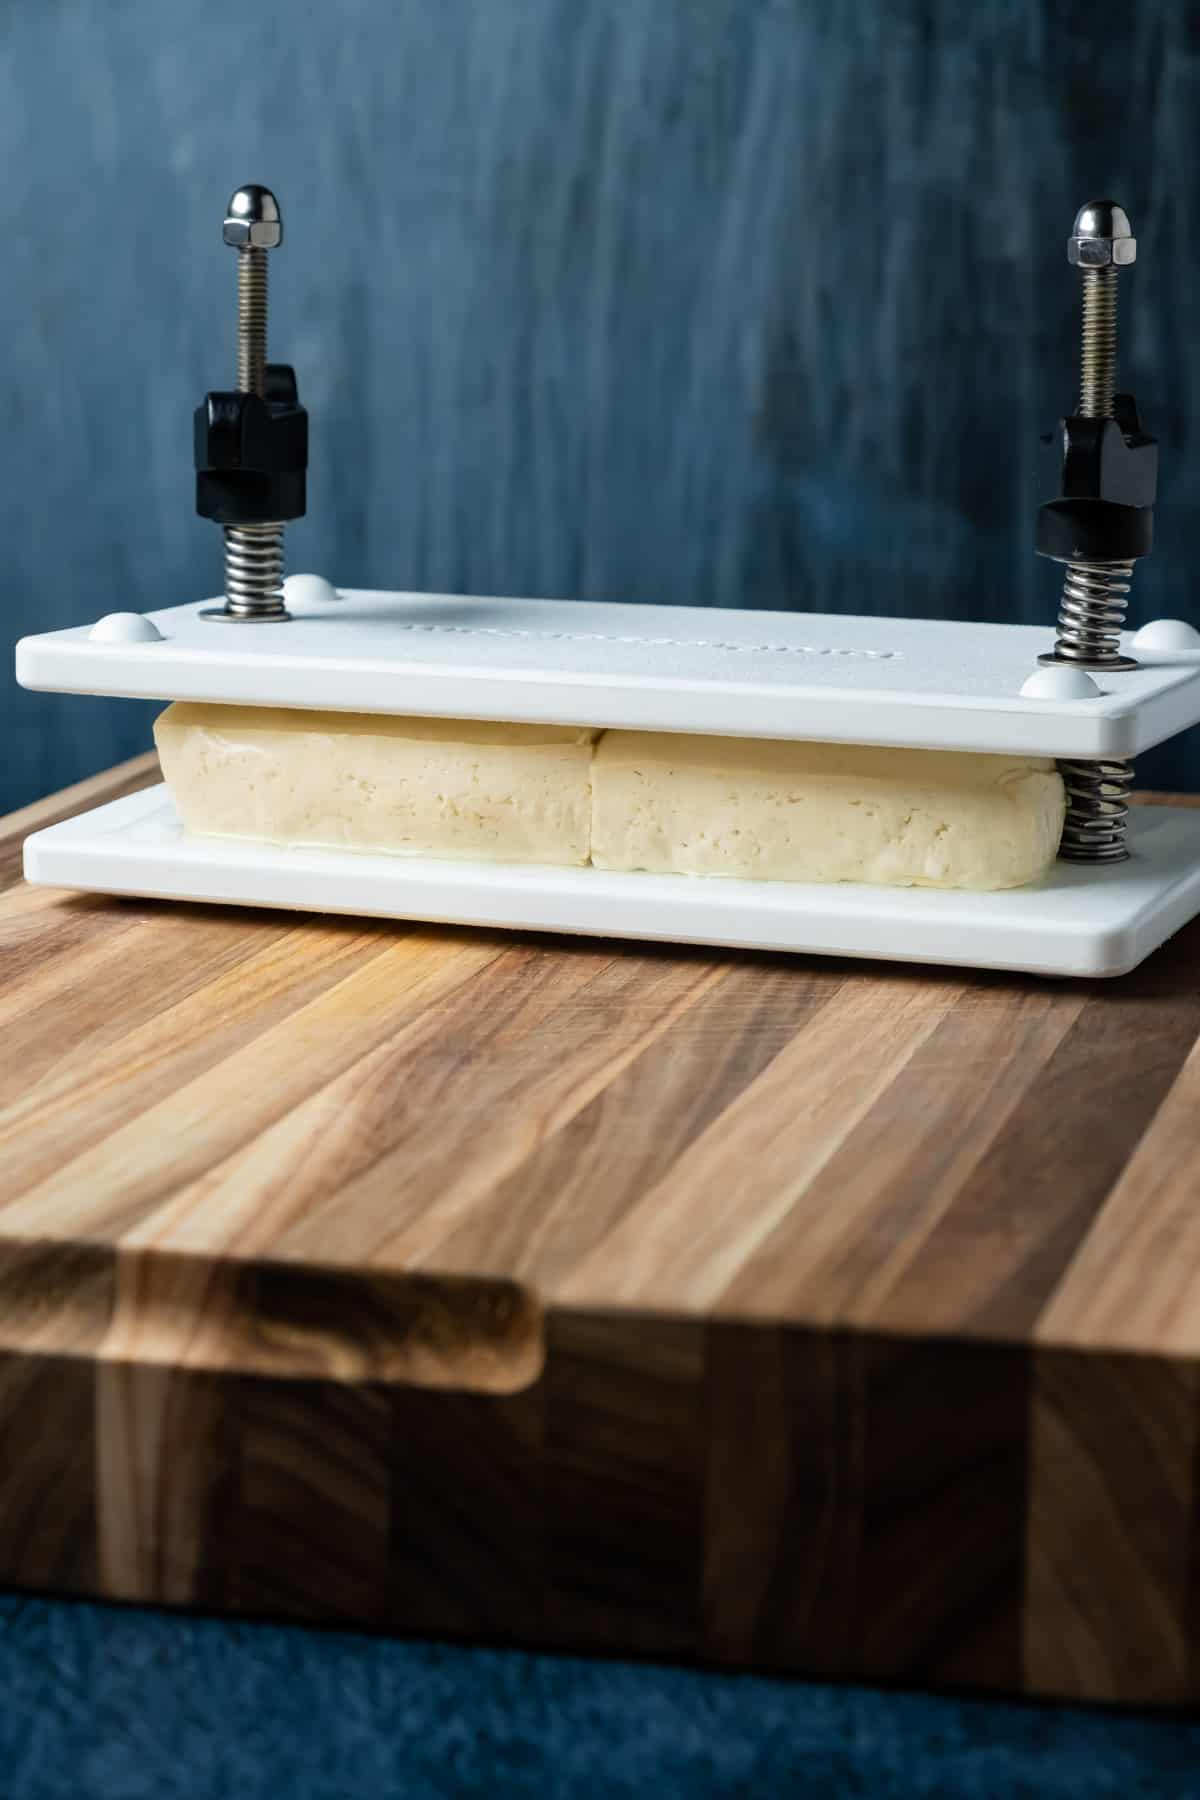 Tofu pressing in a tofu press. 